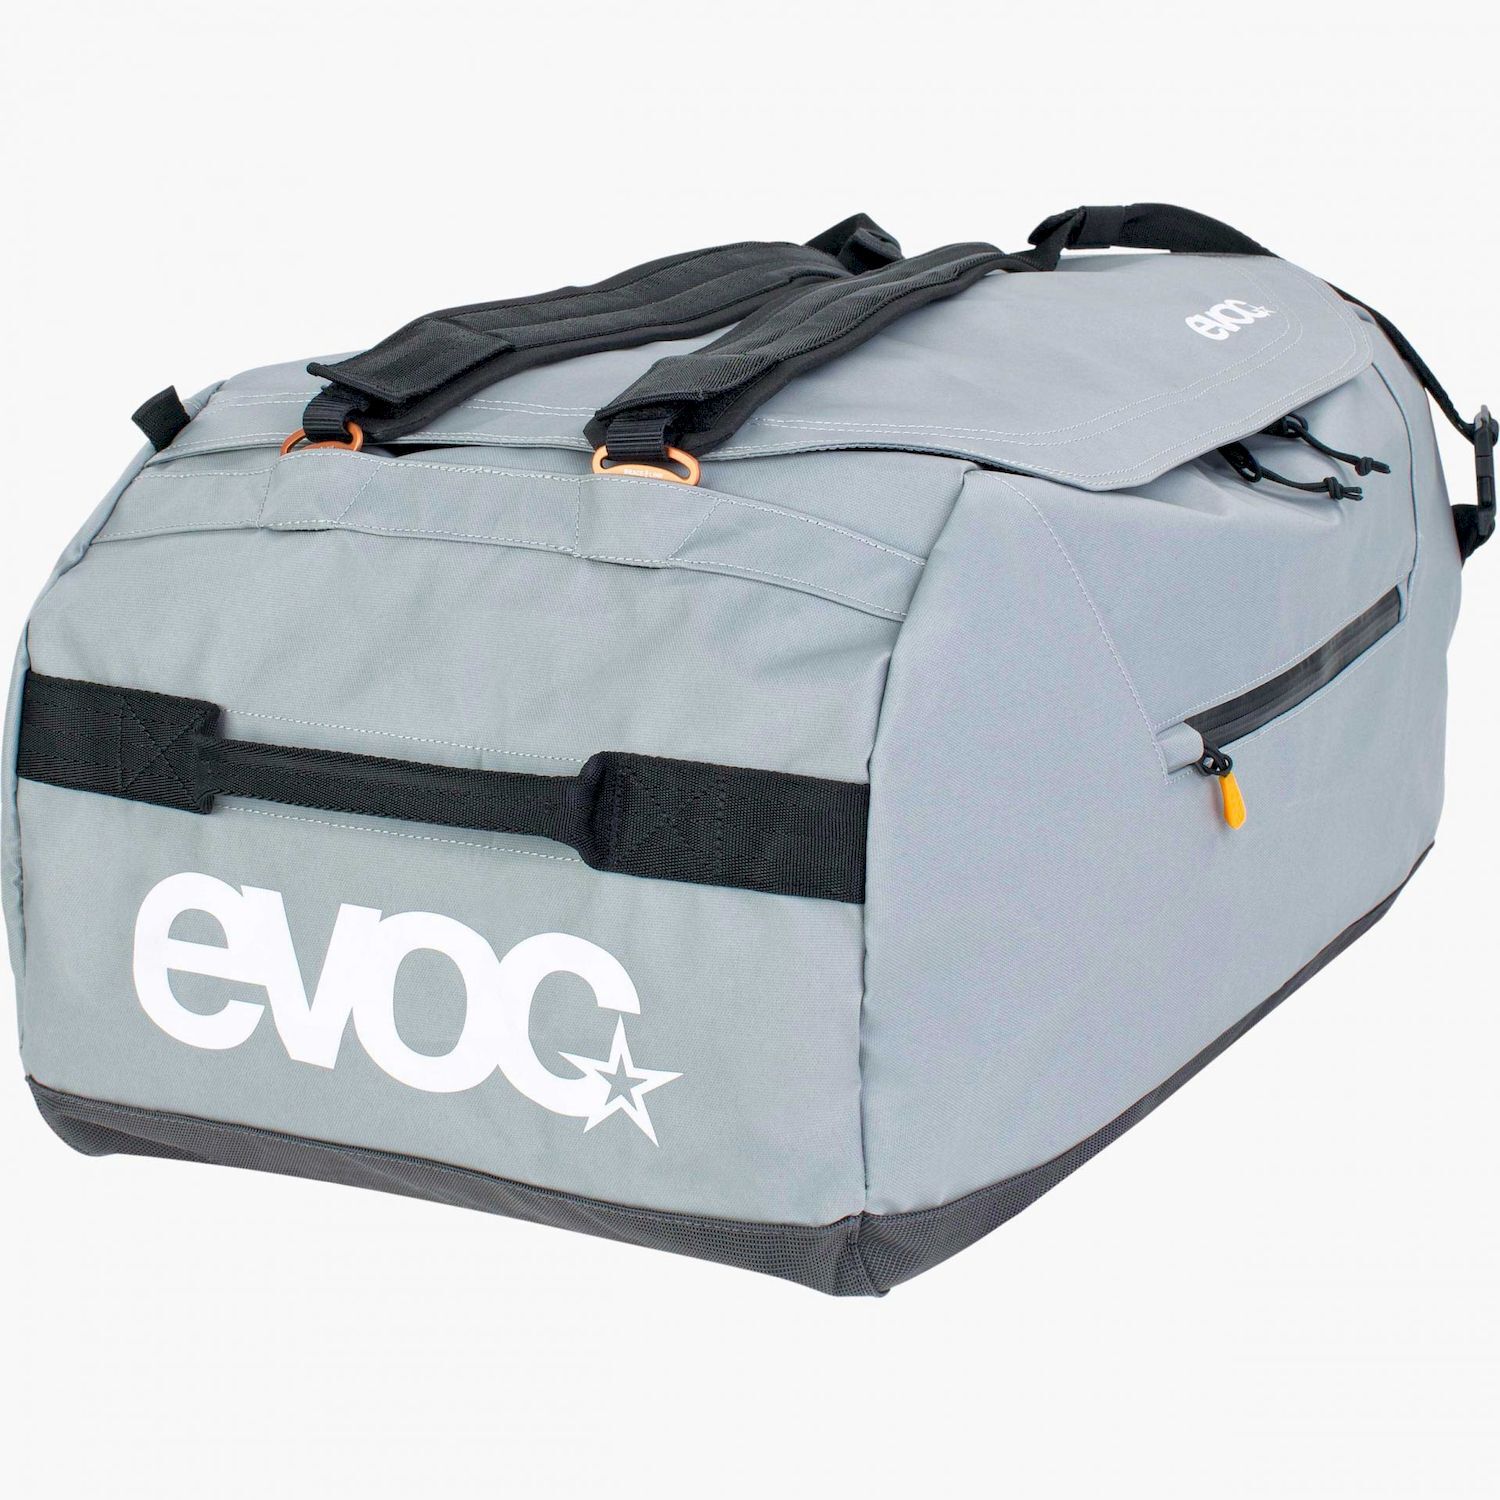 Evoc Duffle Bag 60 - Travel bag